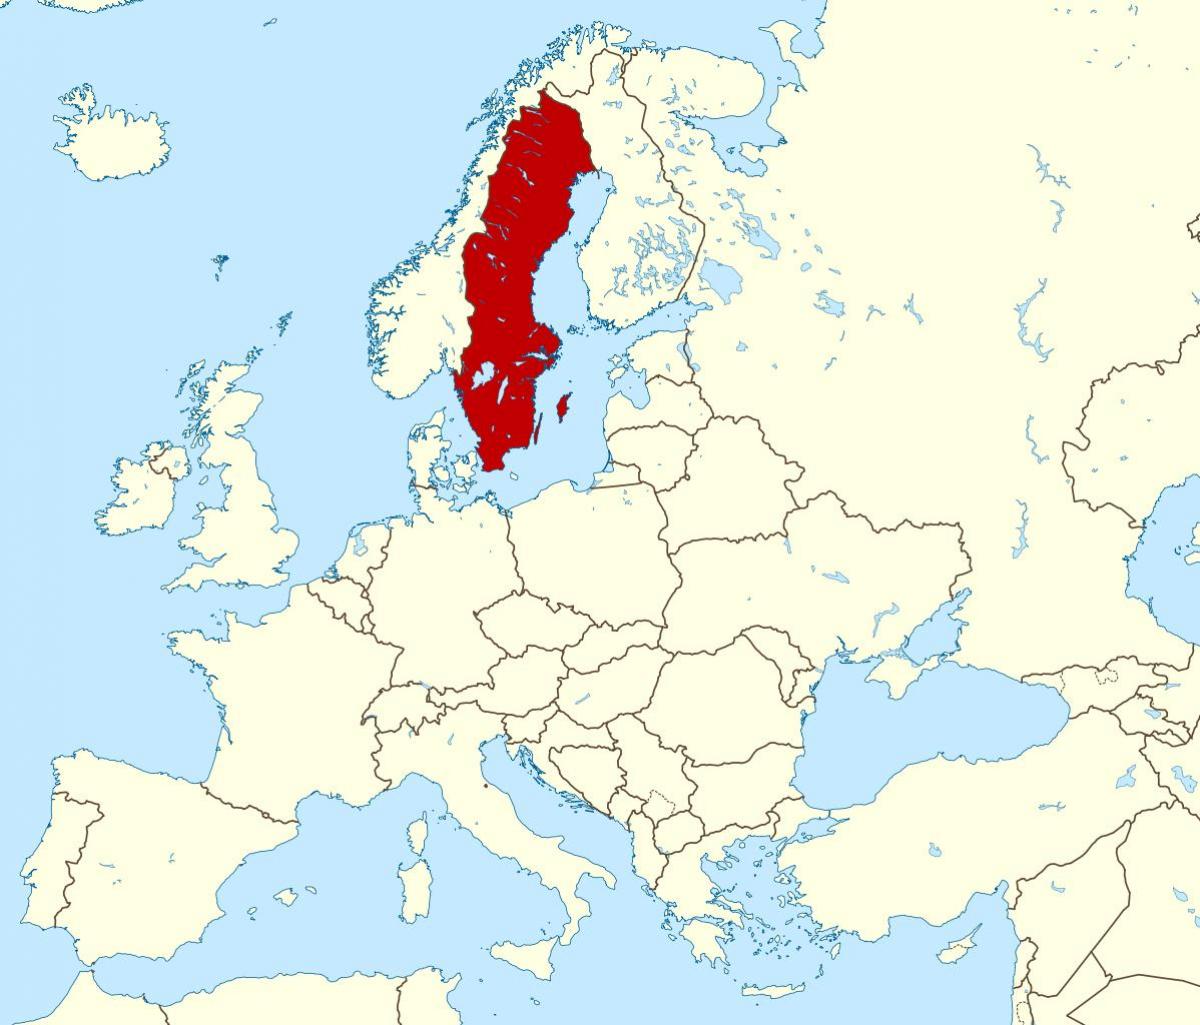 Suecia mapa de Europa - Mapa de Europa de Suecia (Norte de Europa - Europa)